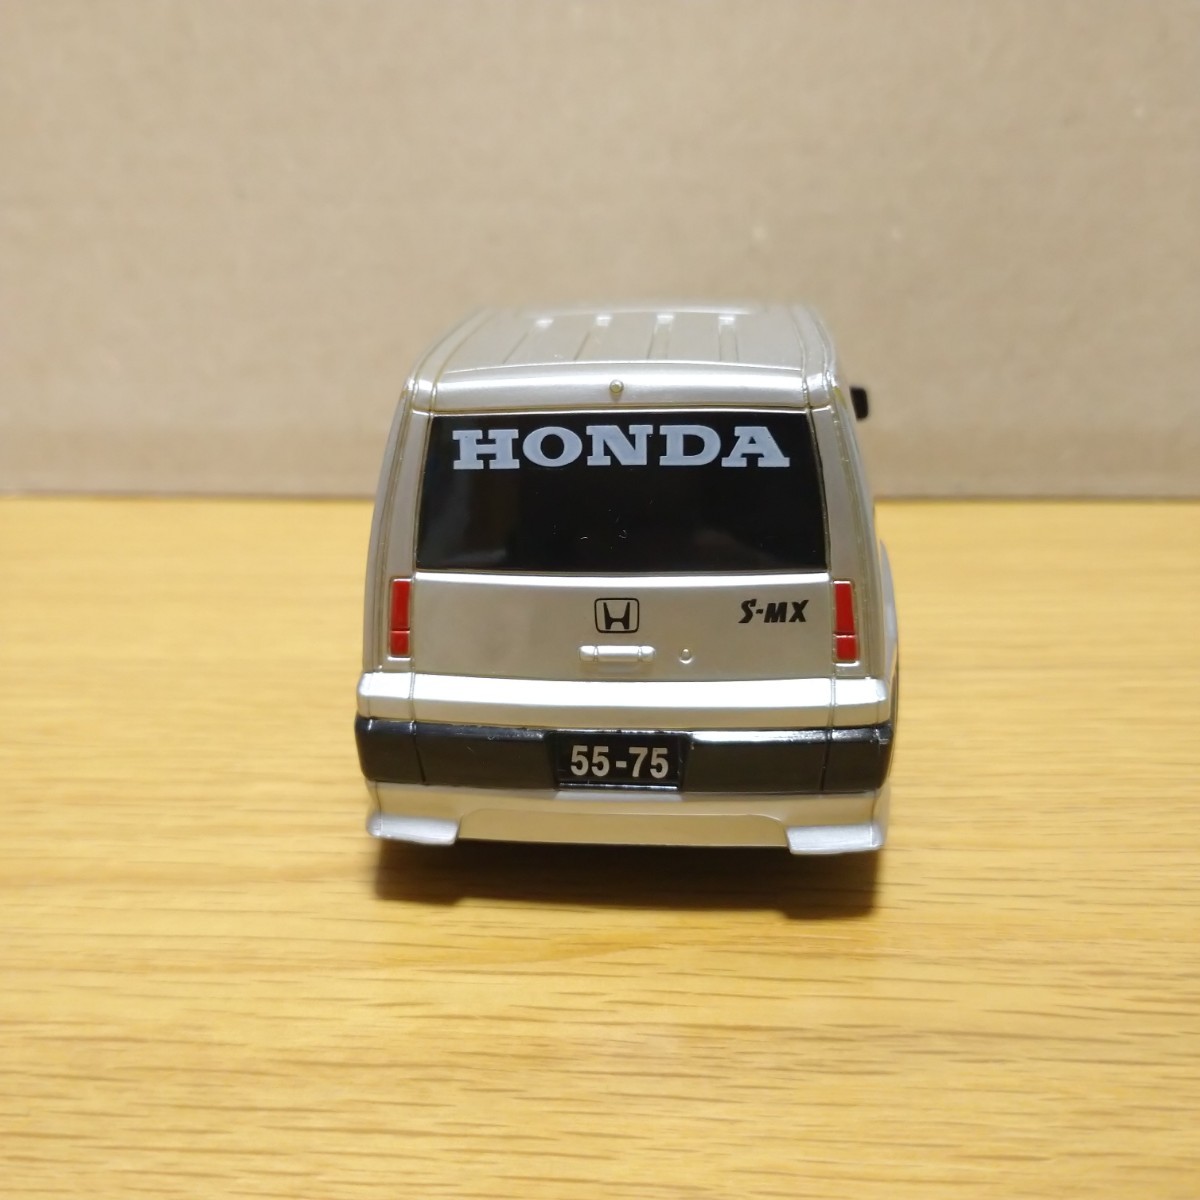 HONDA S-MX ホンダ SMX プルバックカー プルバック コレクション ドライブタウン ミニカー minicar limited car collection s mxの画像5